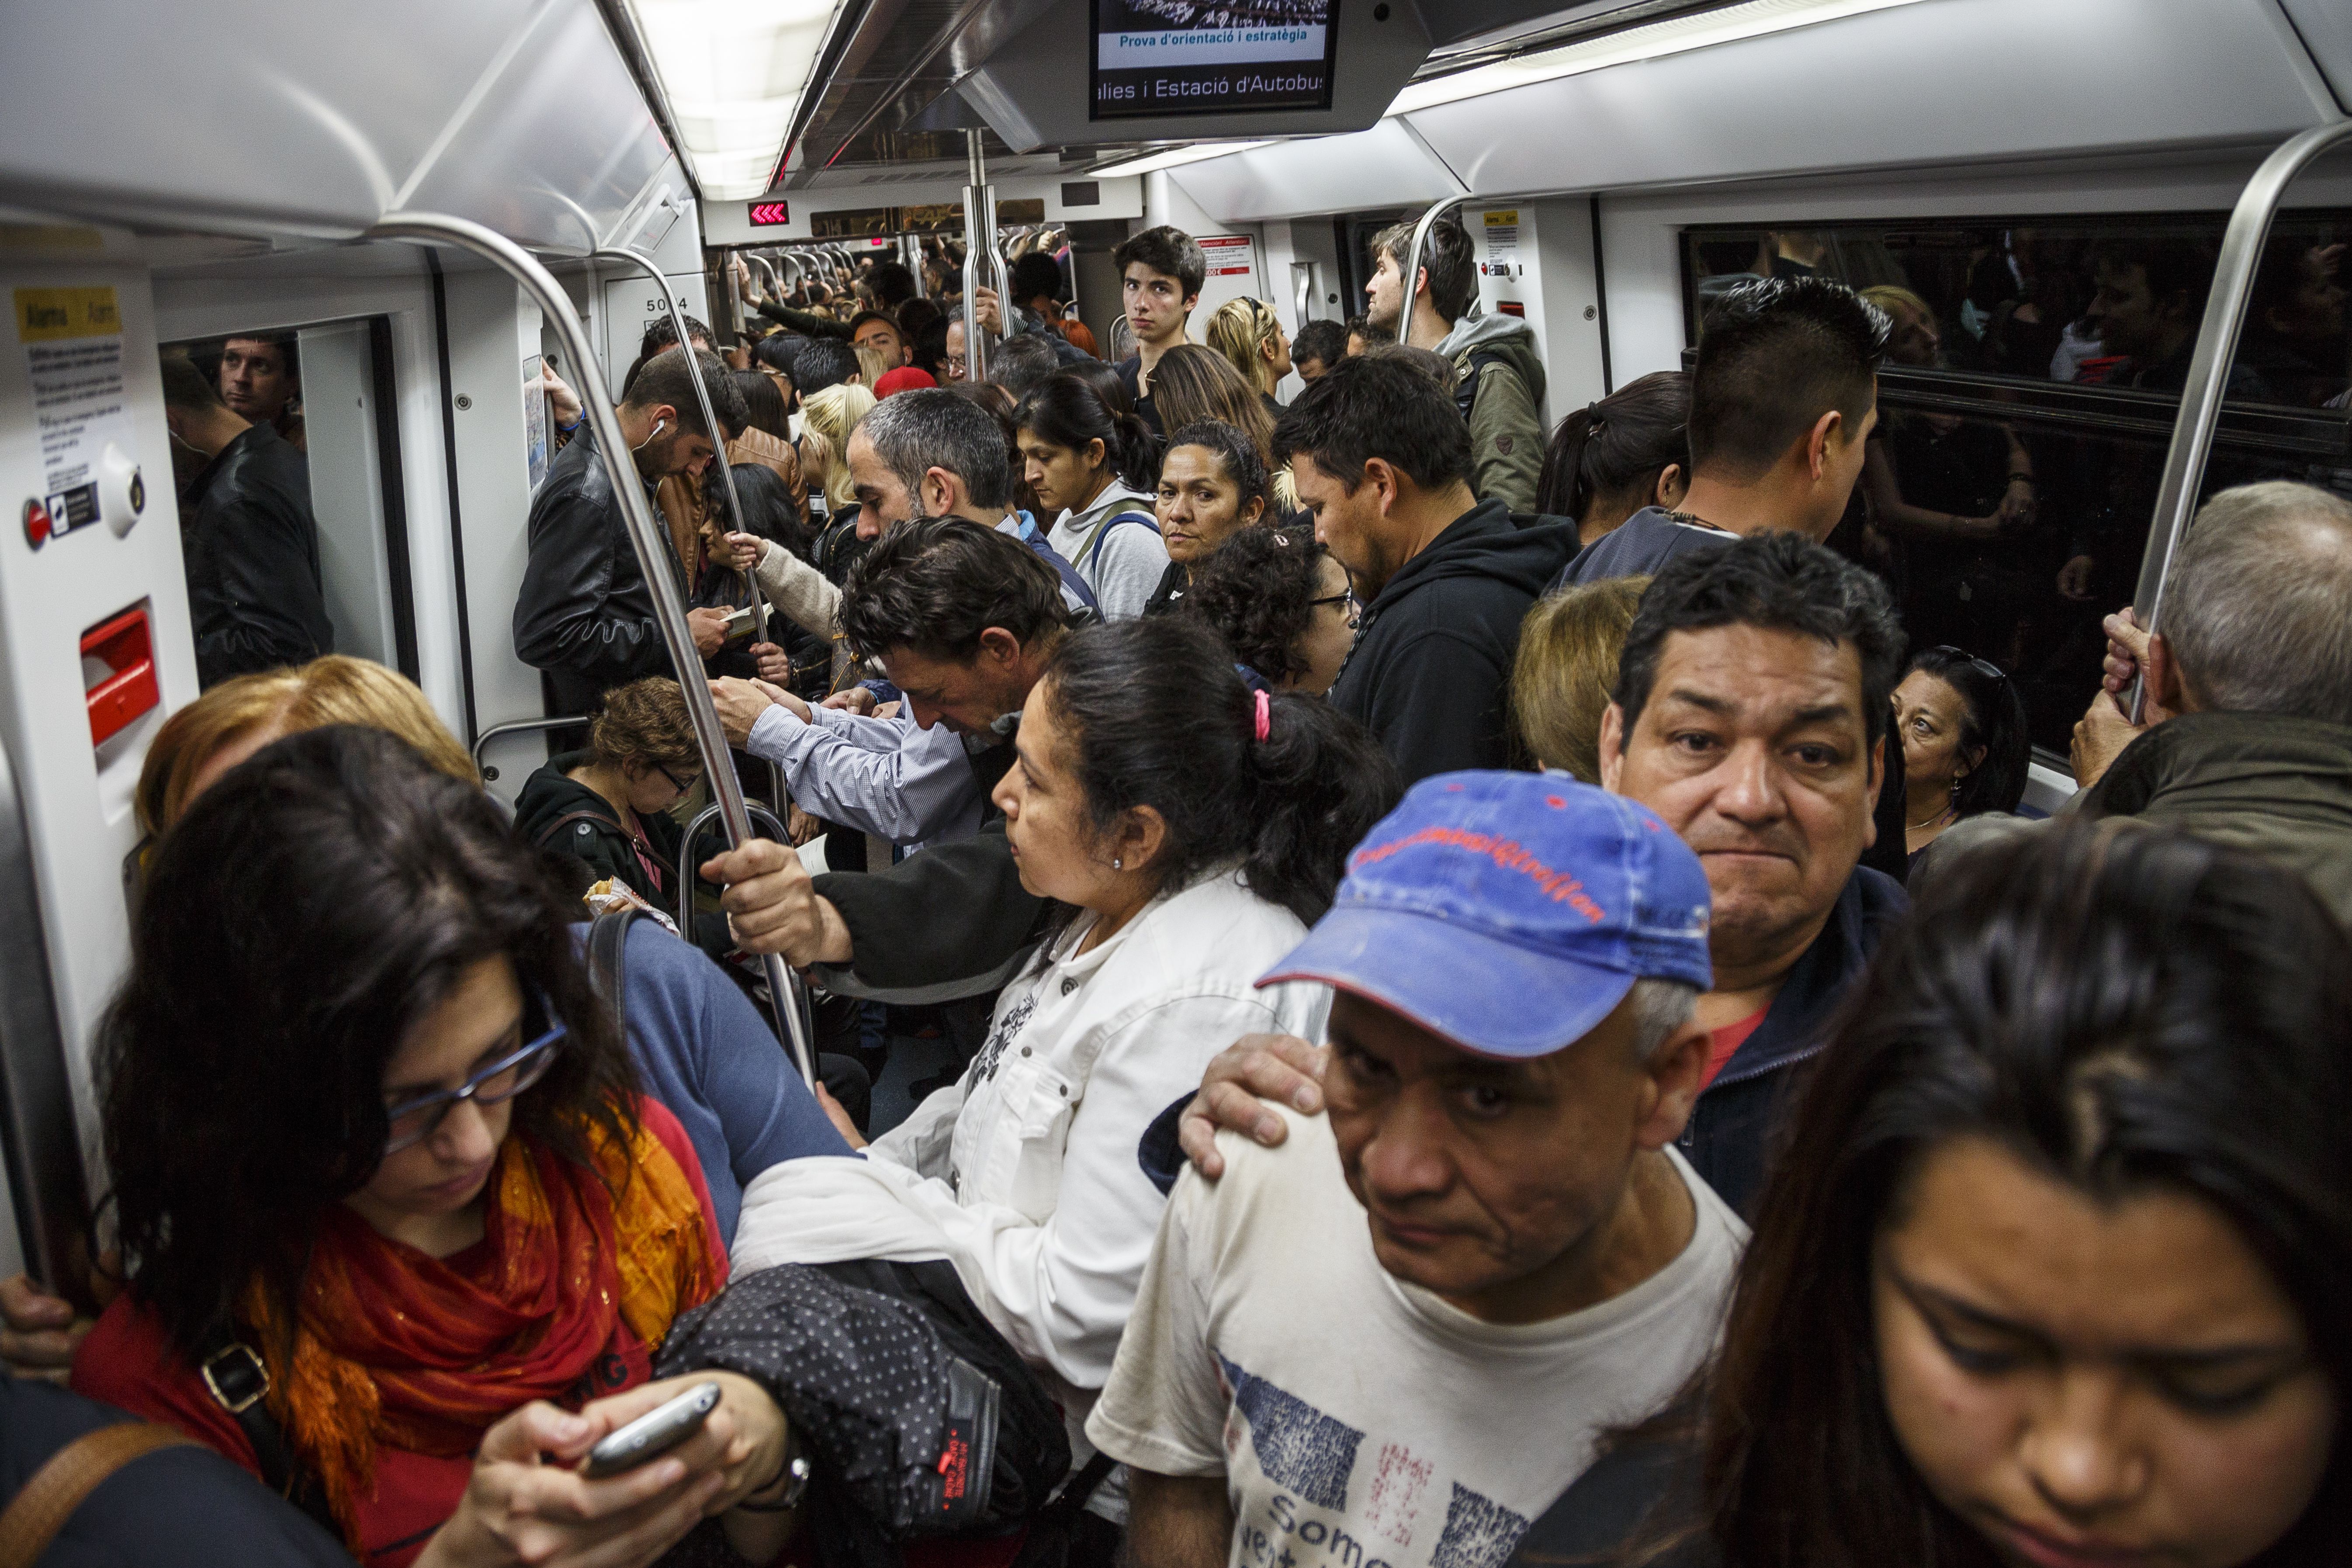 70 carteristes tenen prohibit entrar al metro